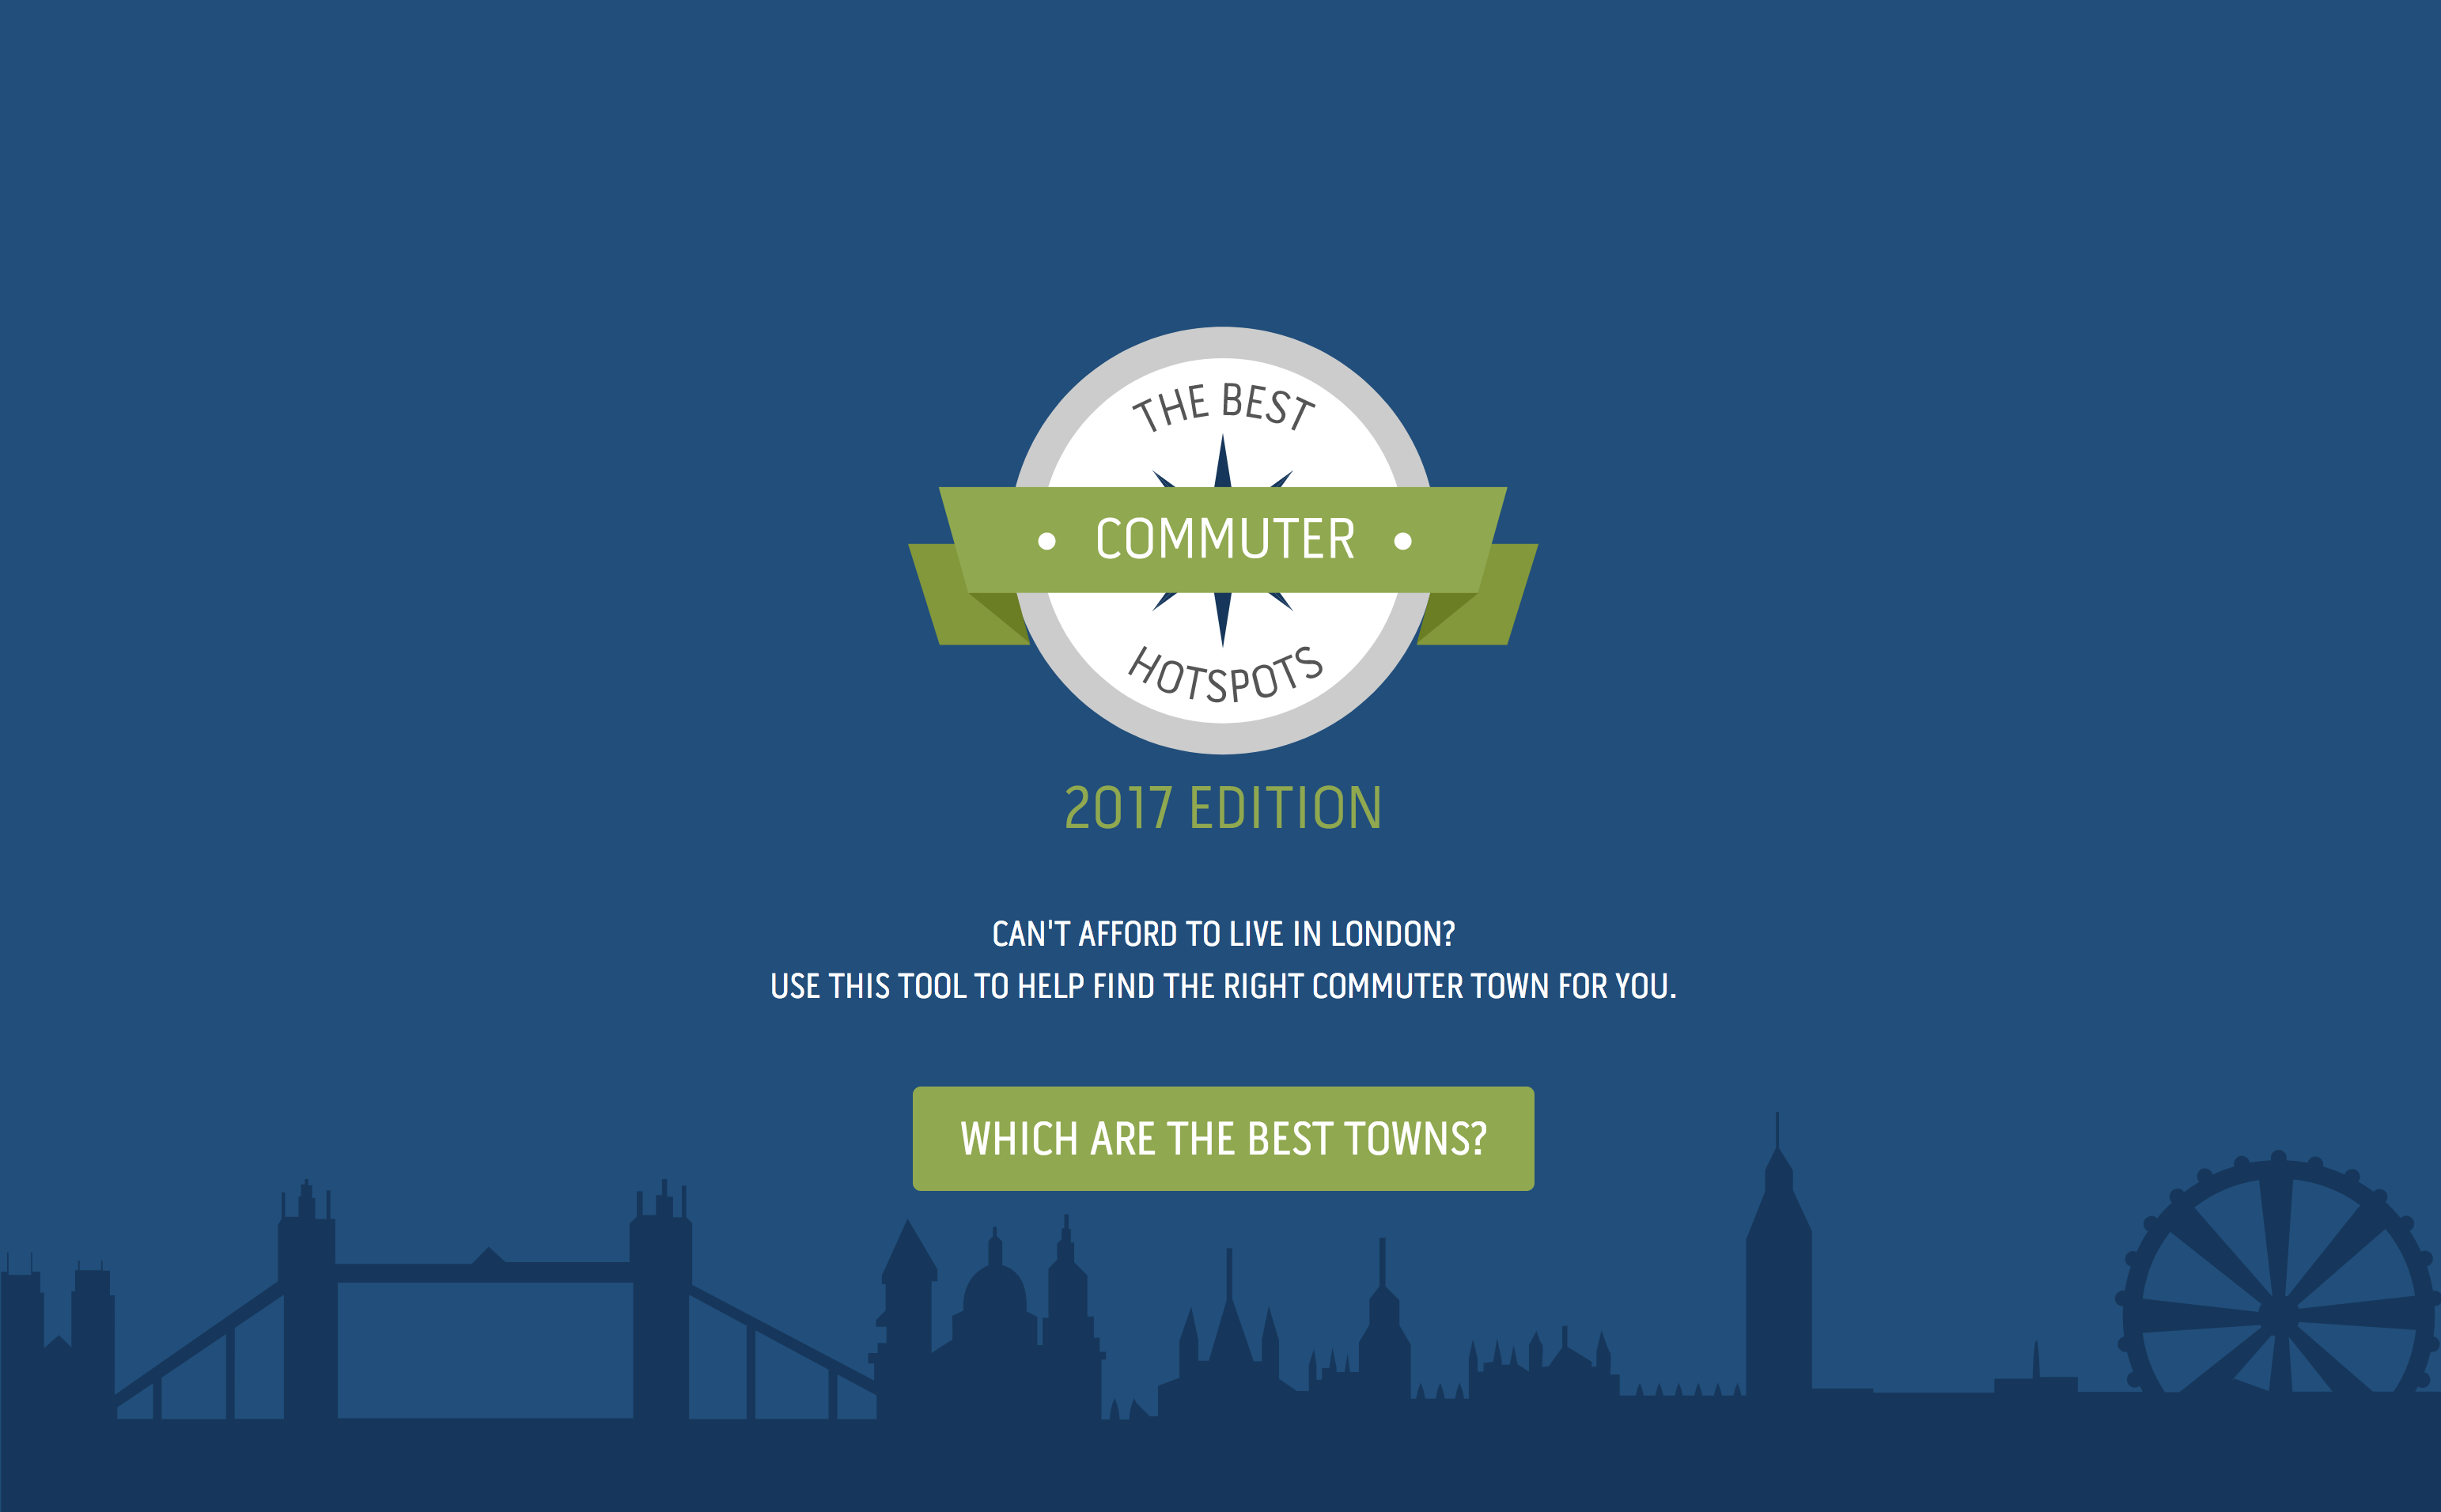 TotallyMoney.com - London's Best Commuter Hotspots